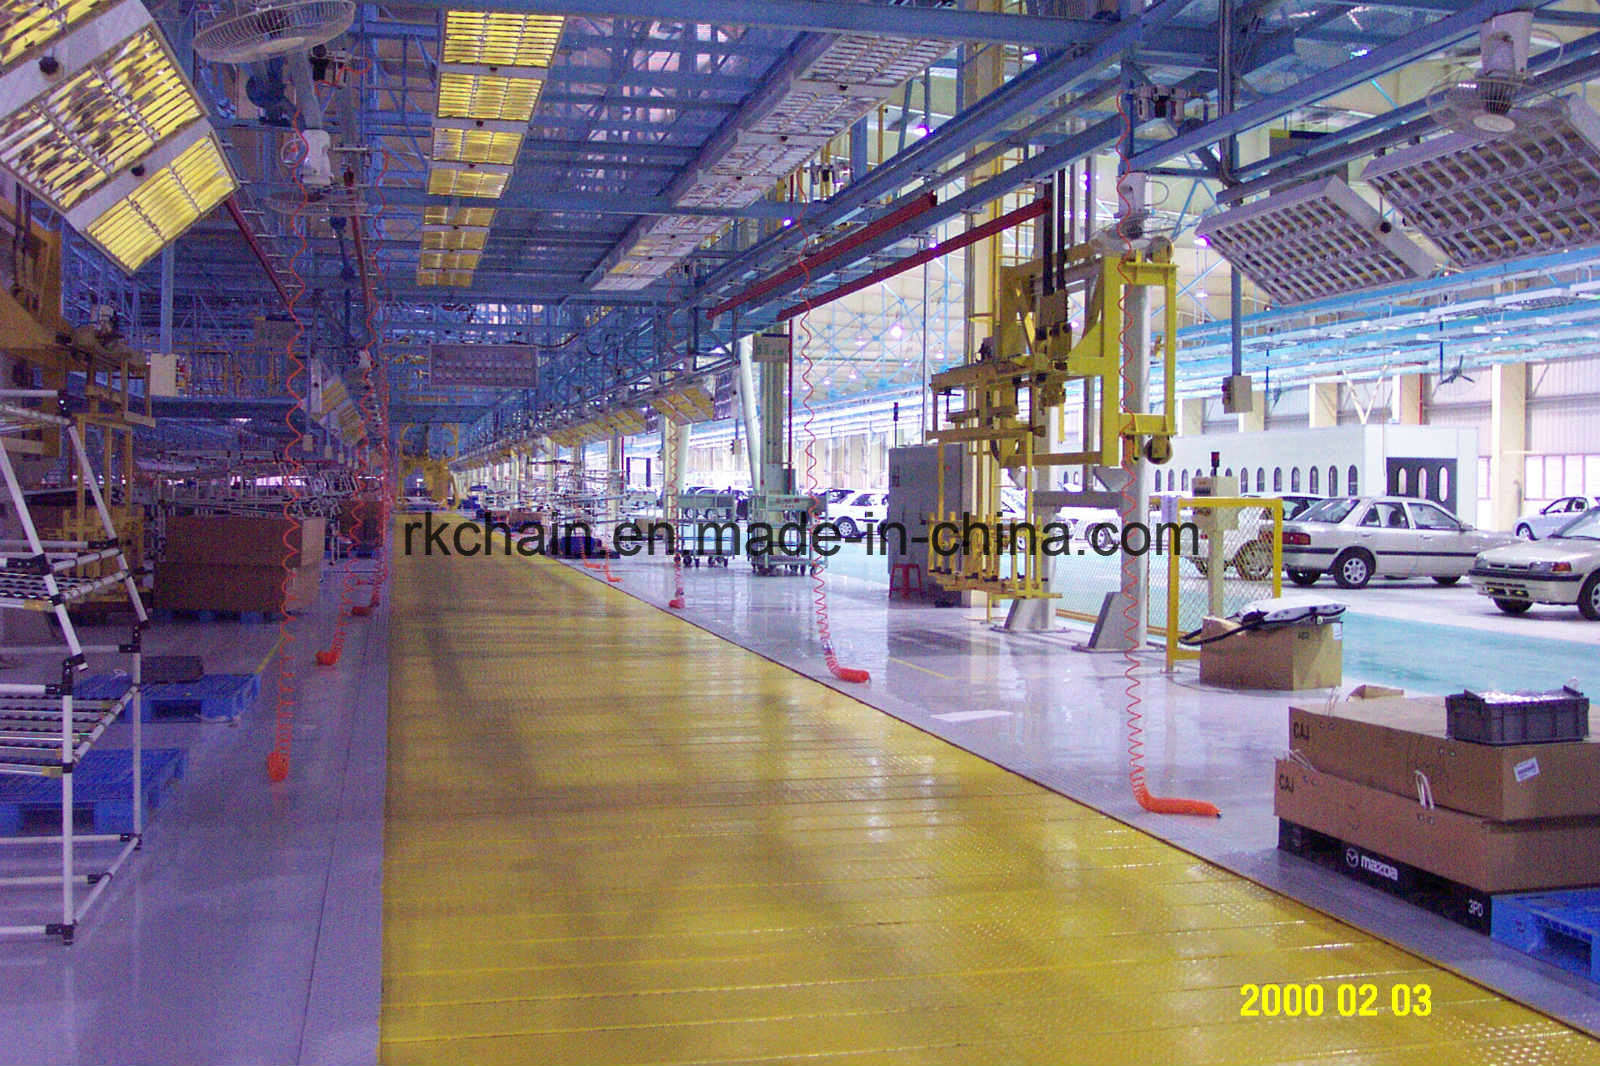 High Quality Chain Conveyor for Conveyor Line